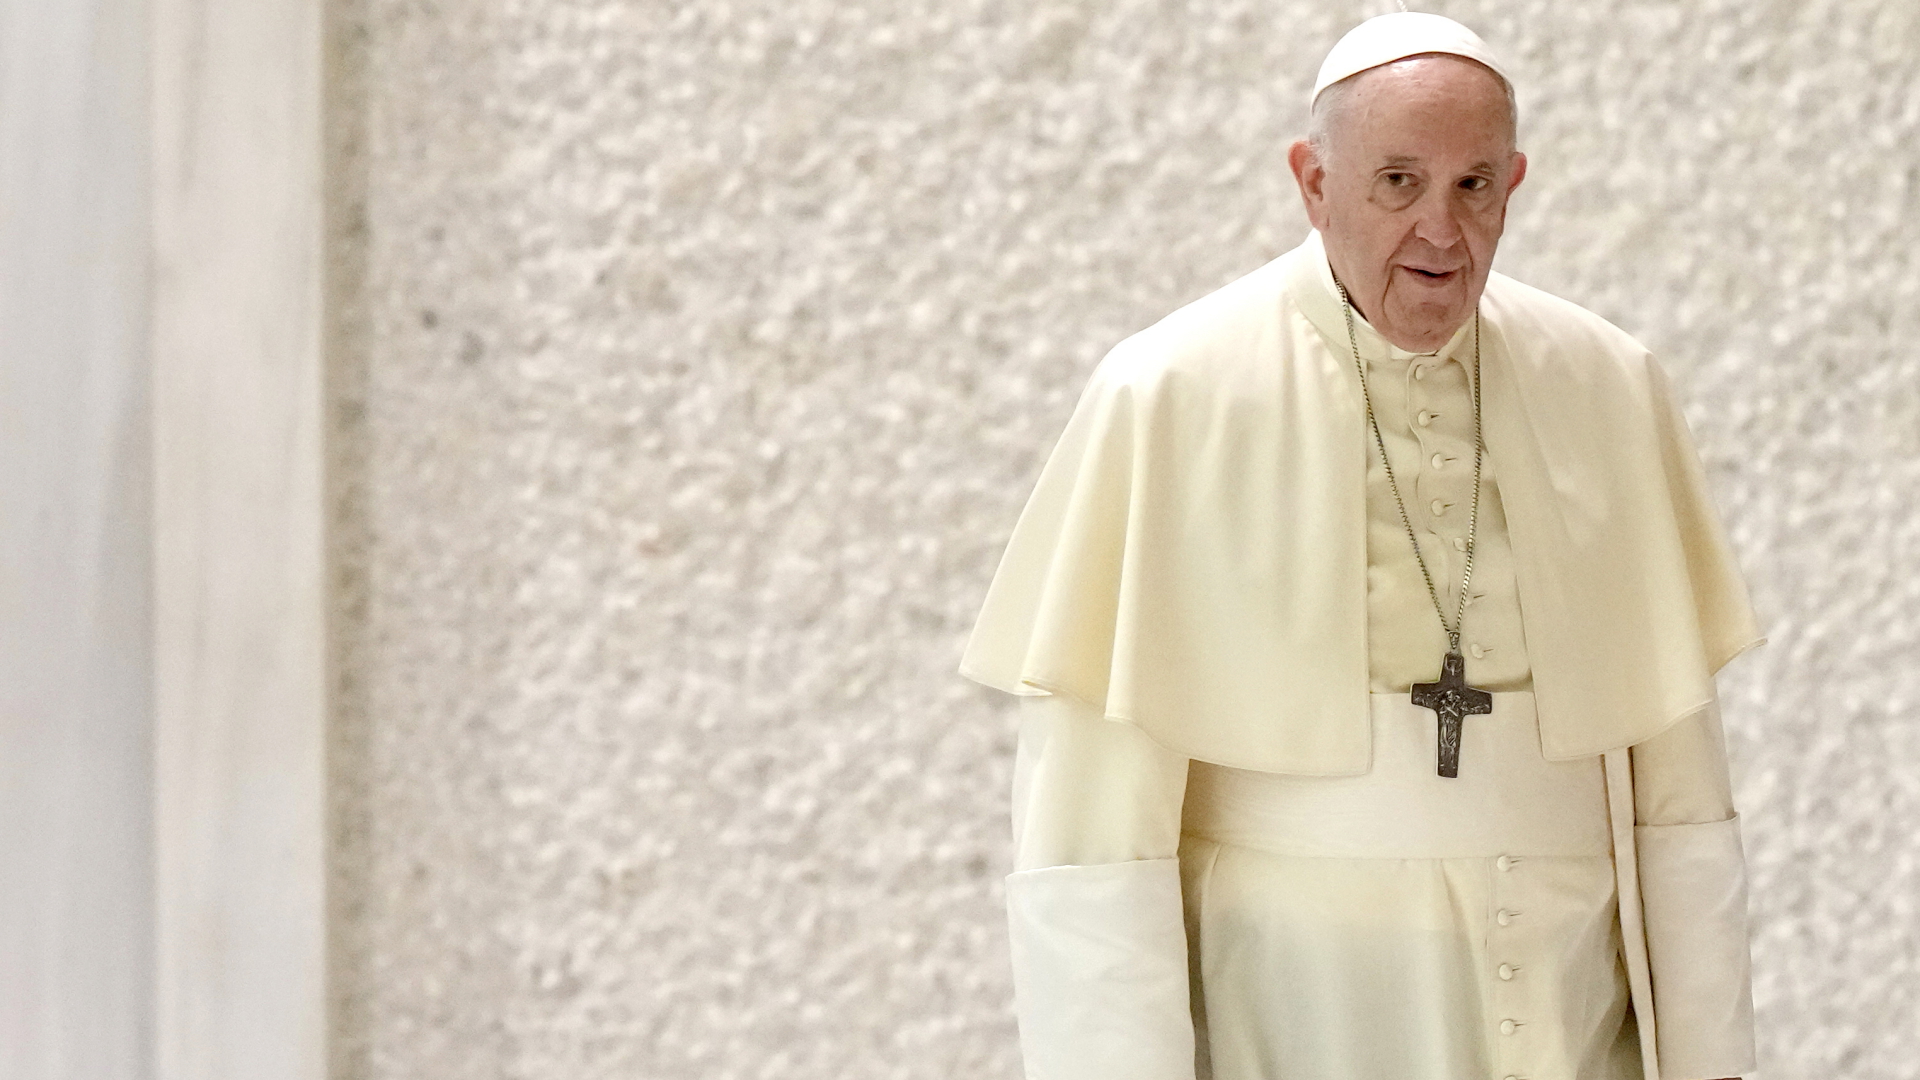 Papst Franziskus auf dem Weg zu seiner wöchentlichen Generalaudienz | dpa